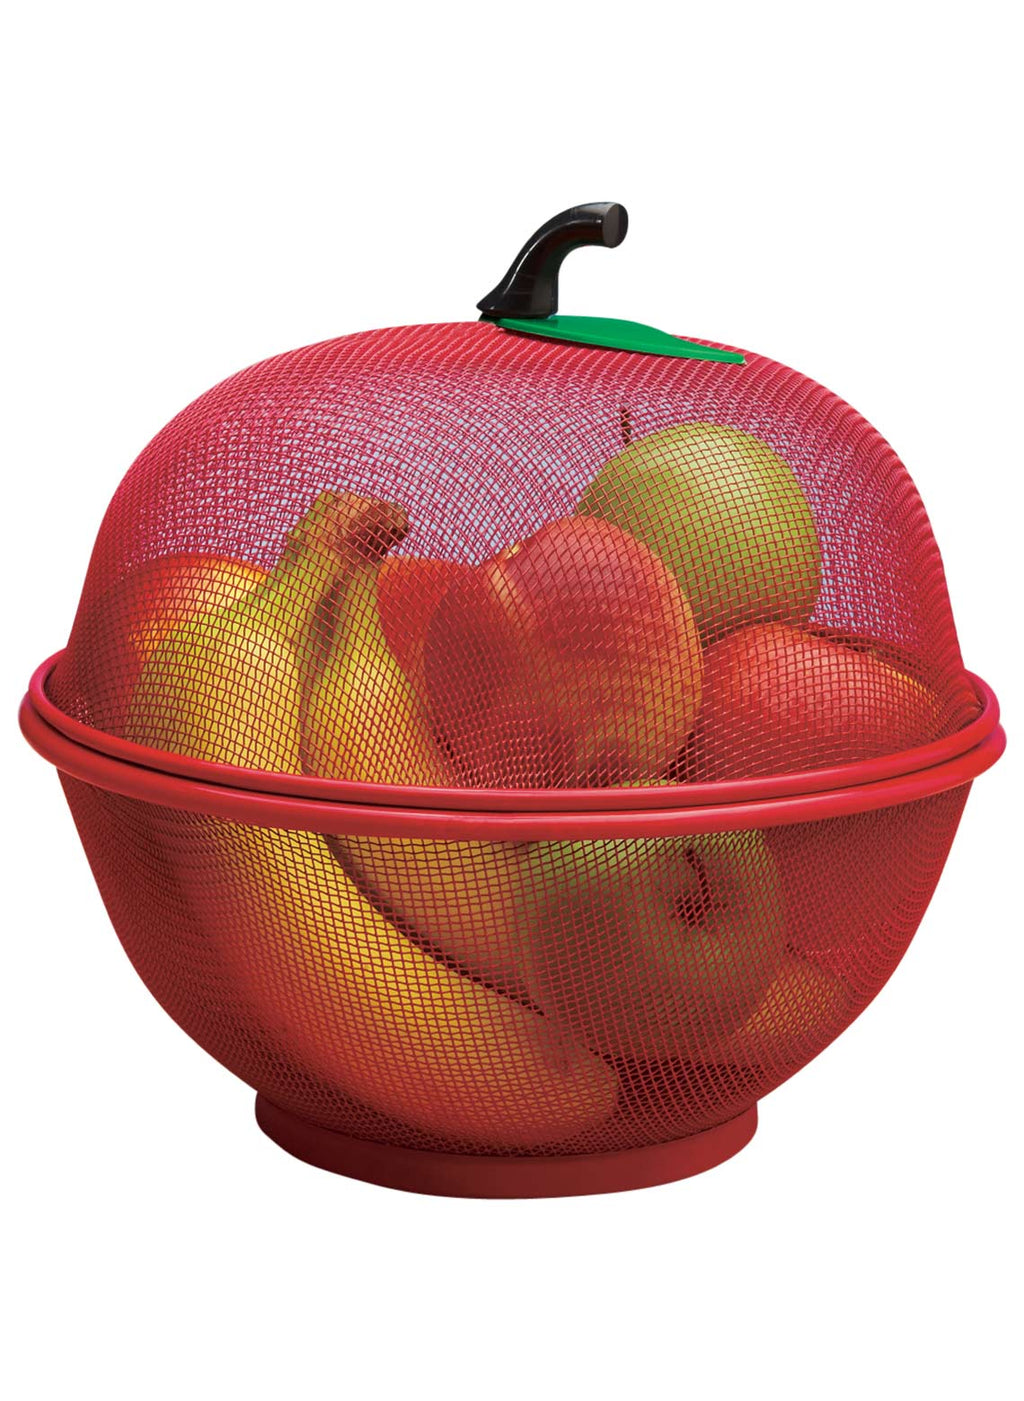 kitchen basket for vegetables